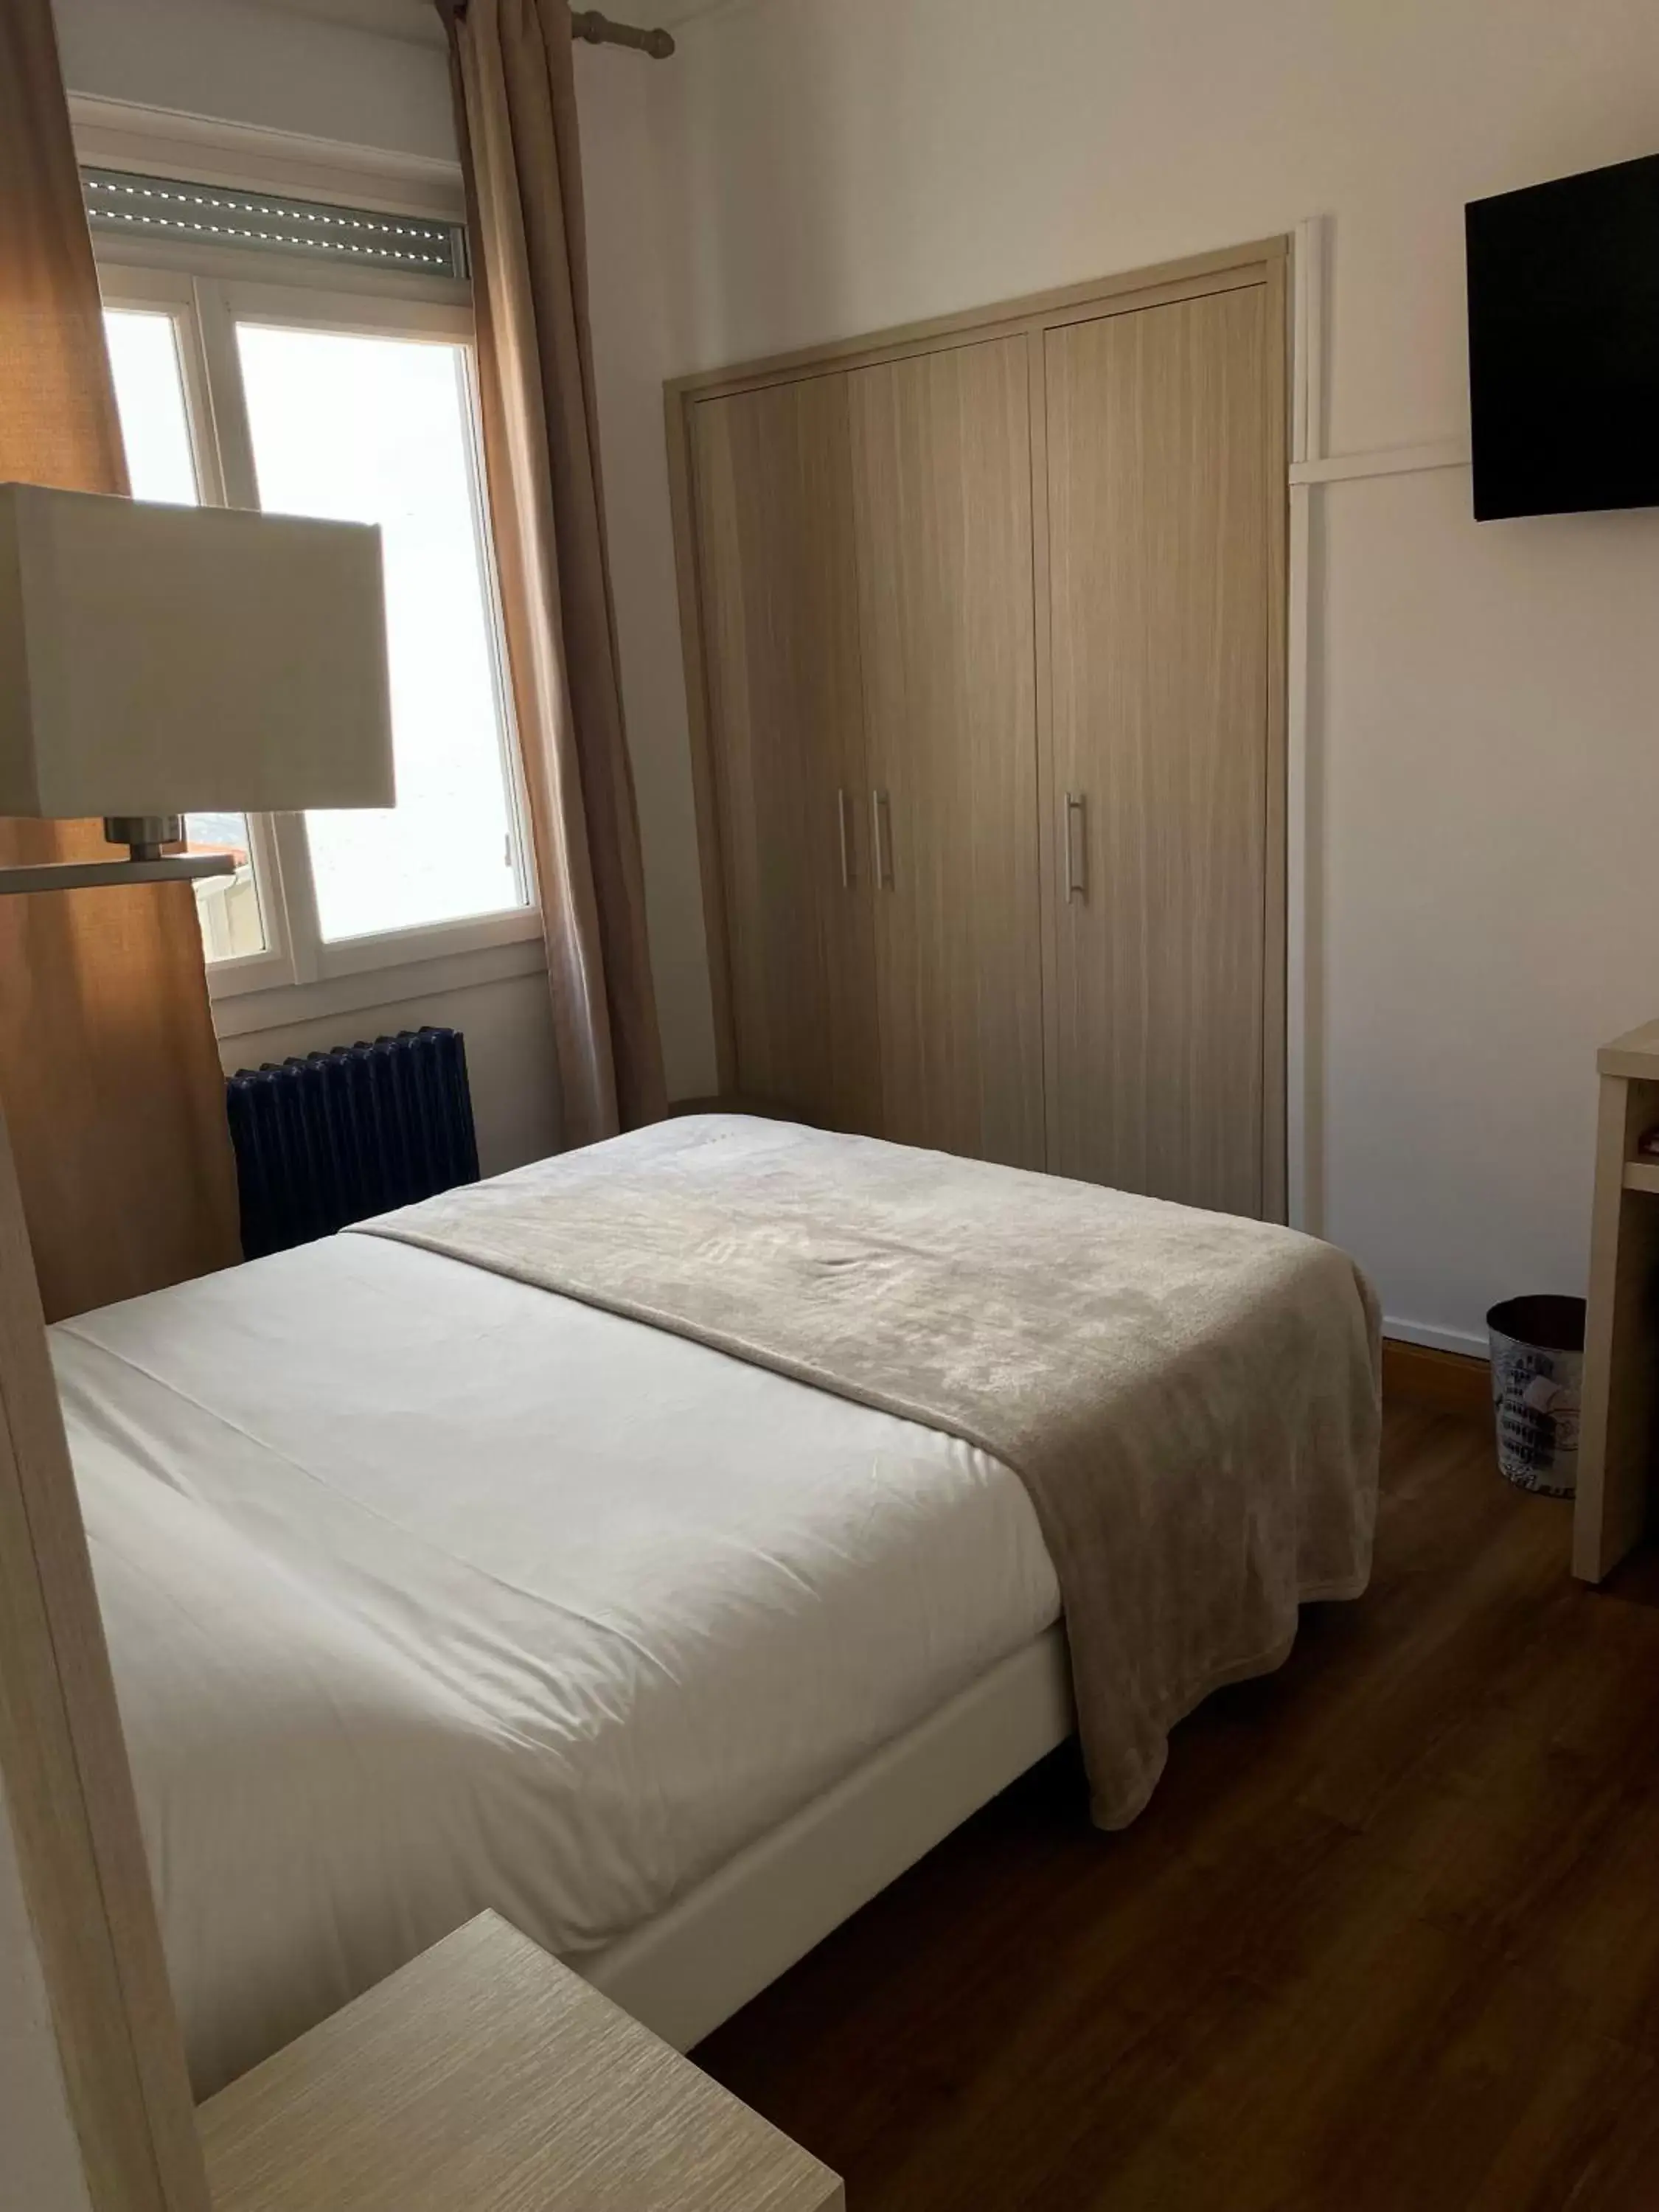 Bedroom in Hotel Lutetia